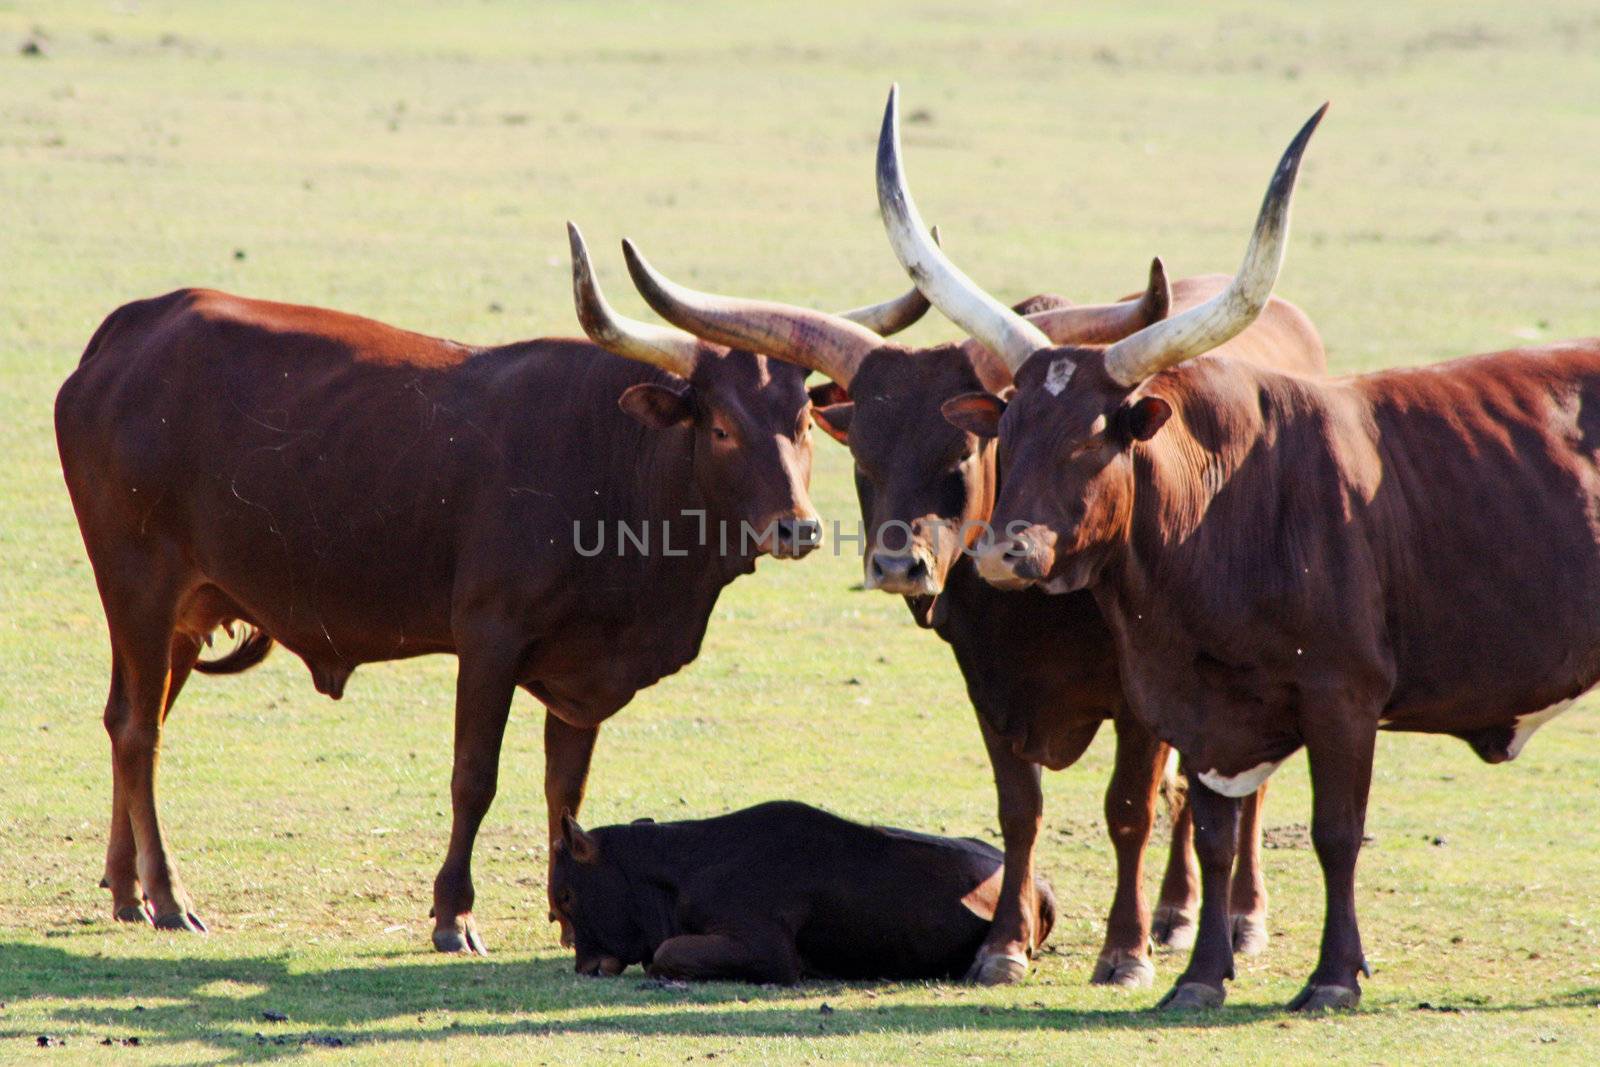 ankole cattle in a field